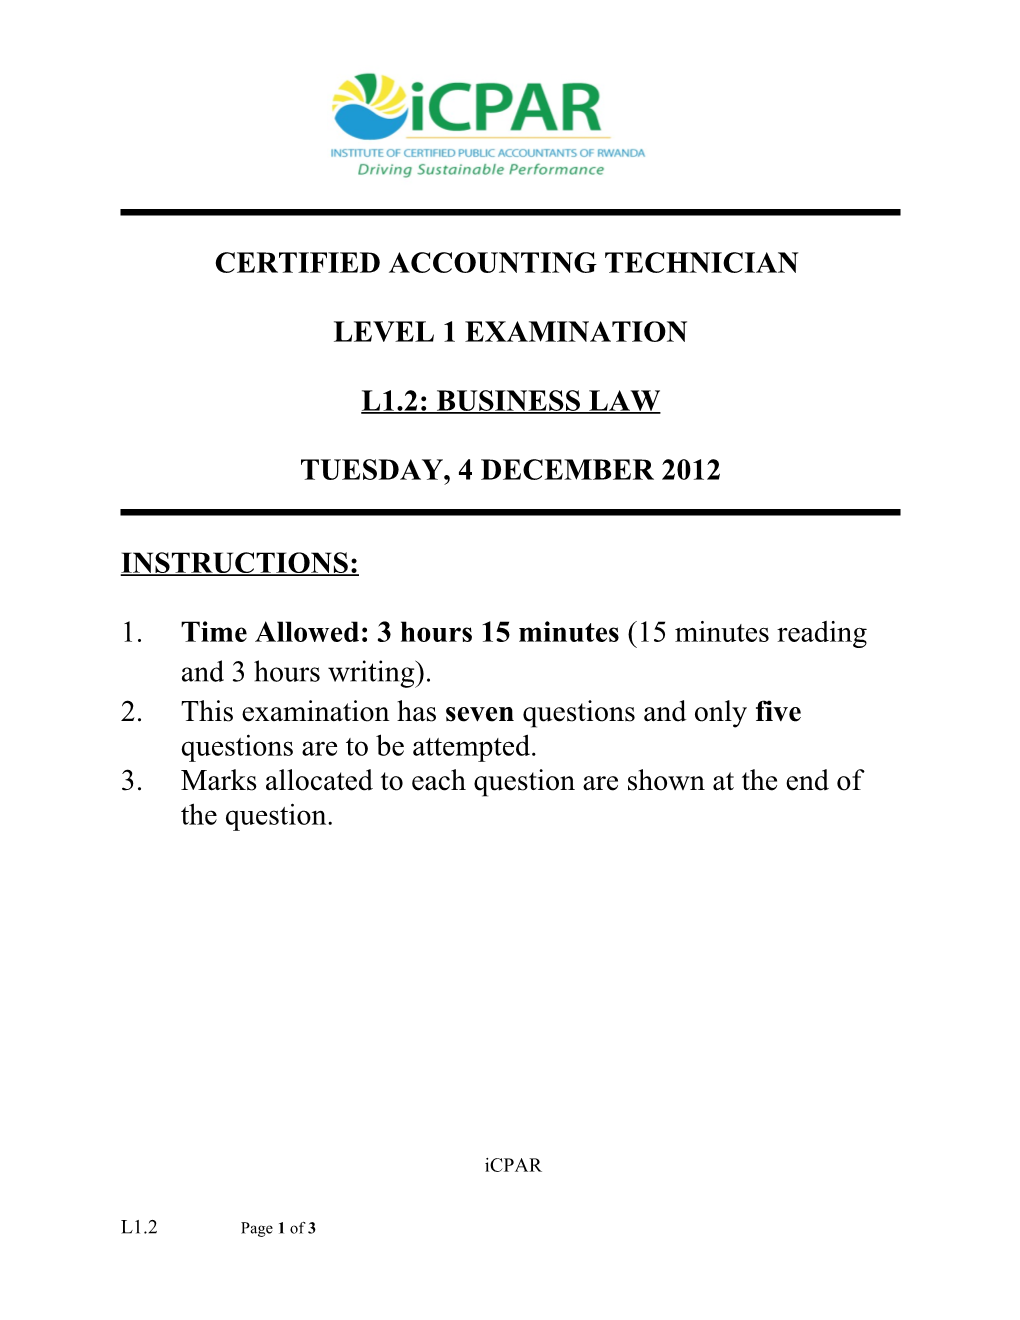 Level 1 Examination